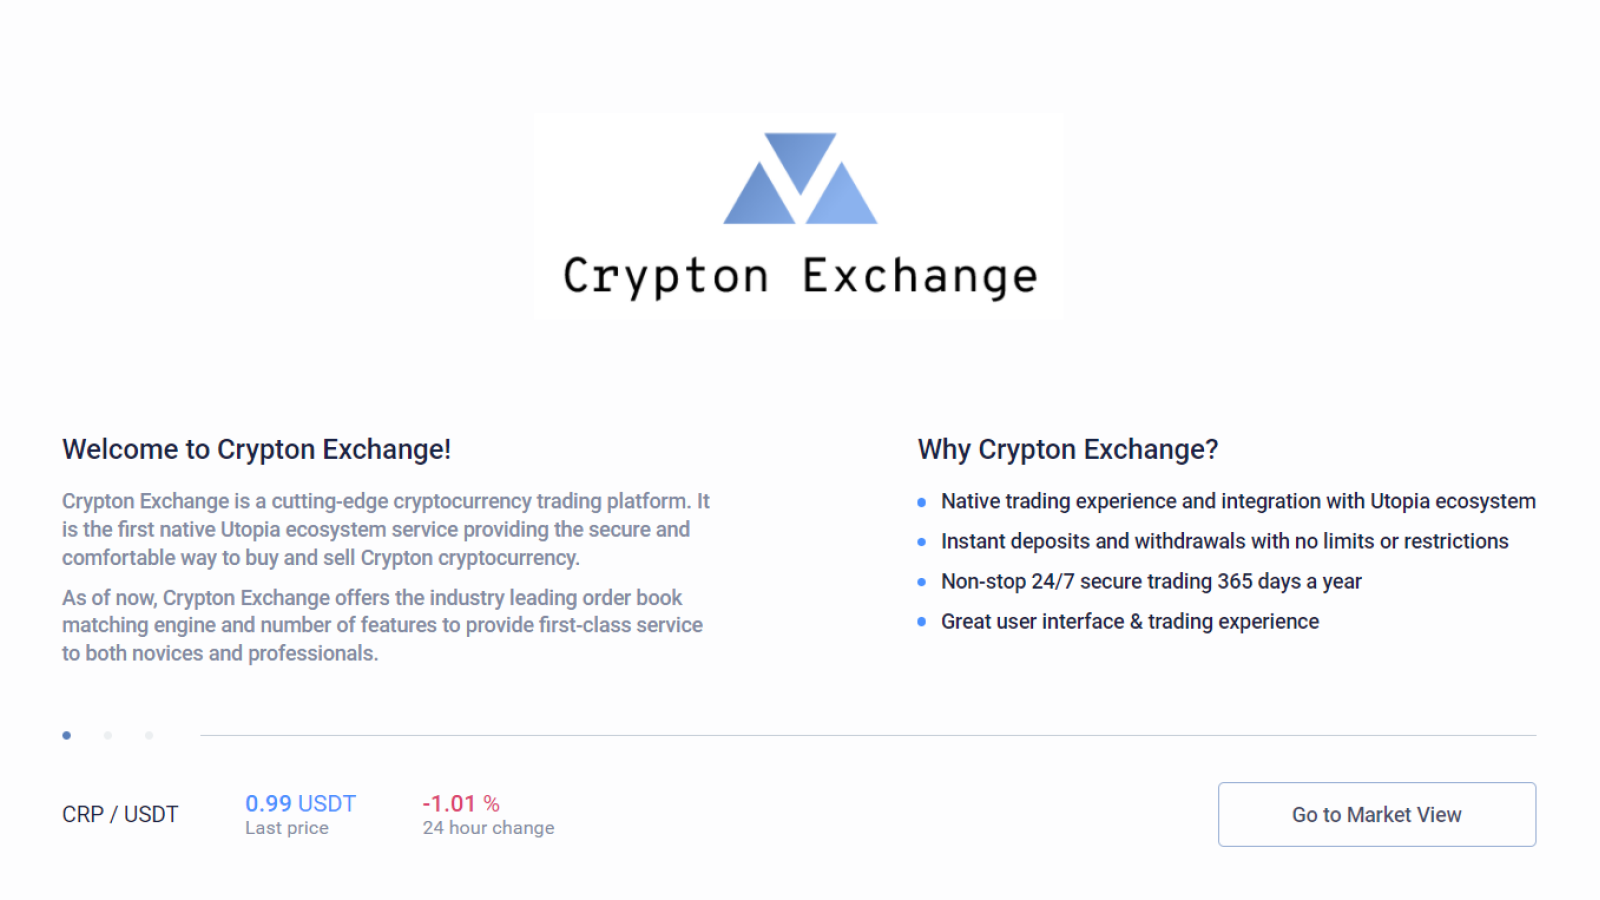 Crypton Exchange